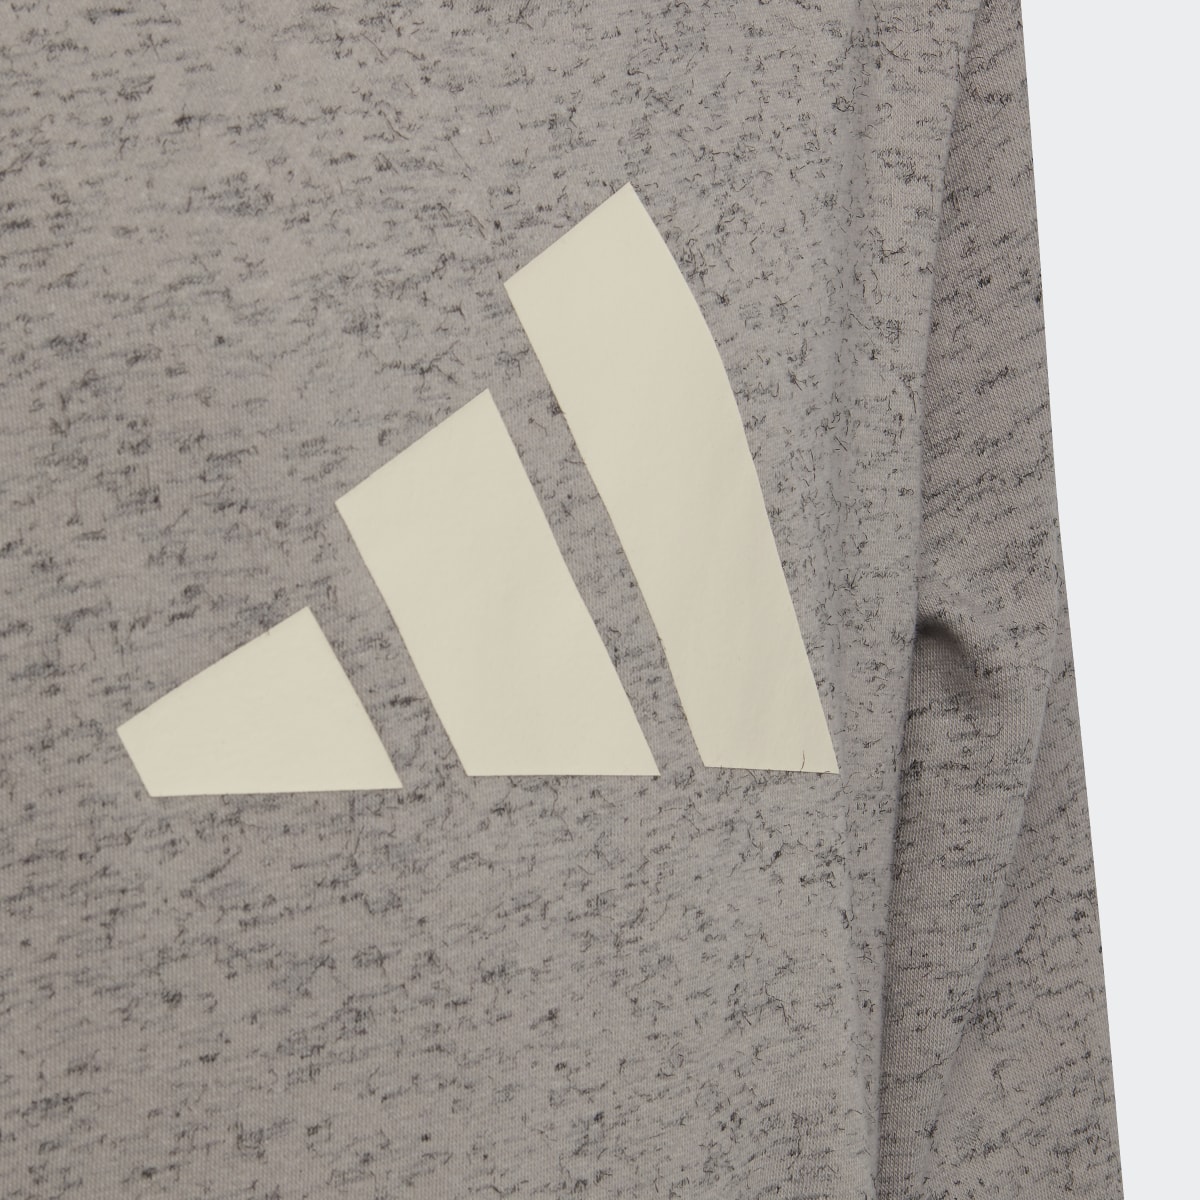 Adidas Future Icons 3-Streifen Hoodie. 5